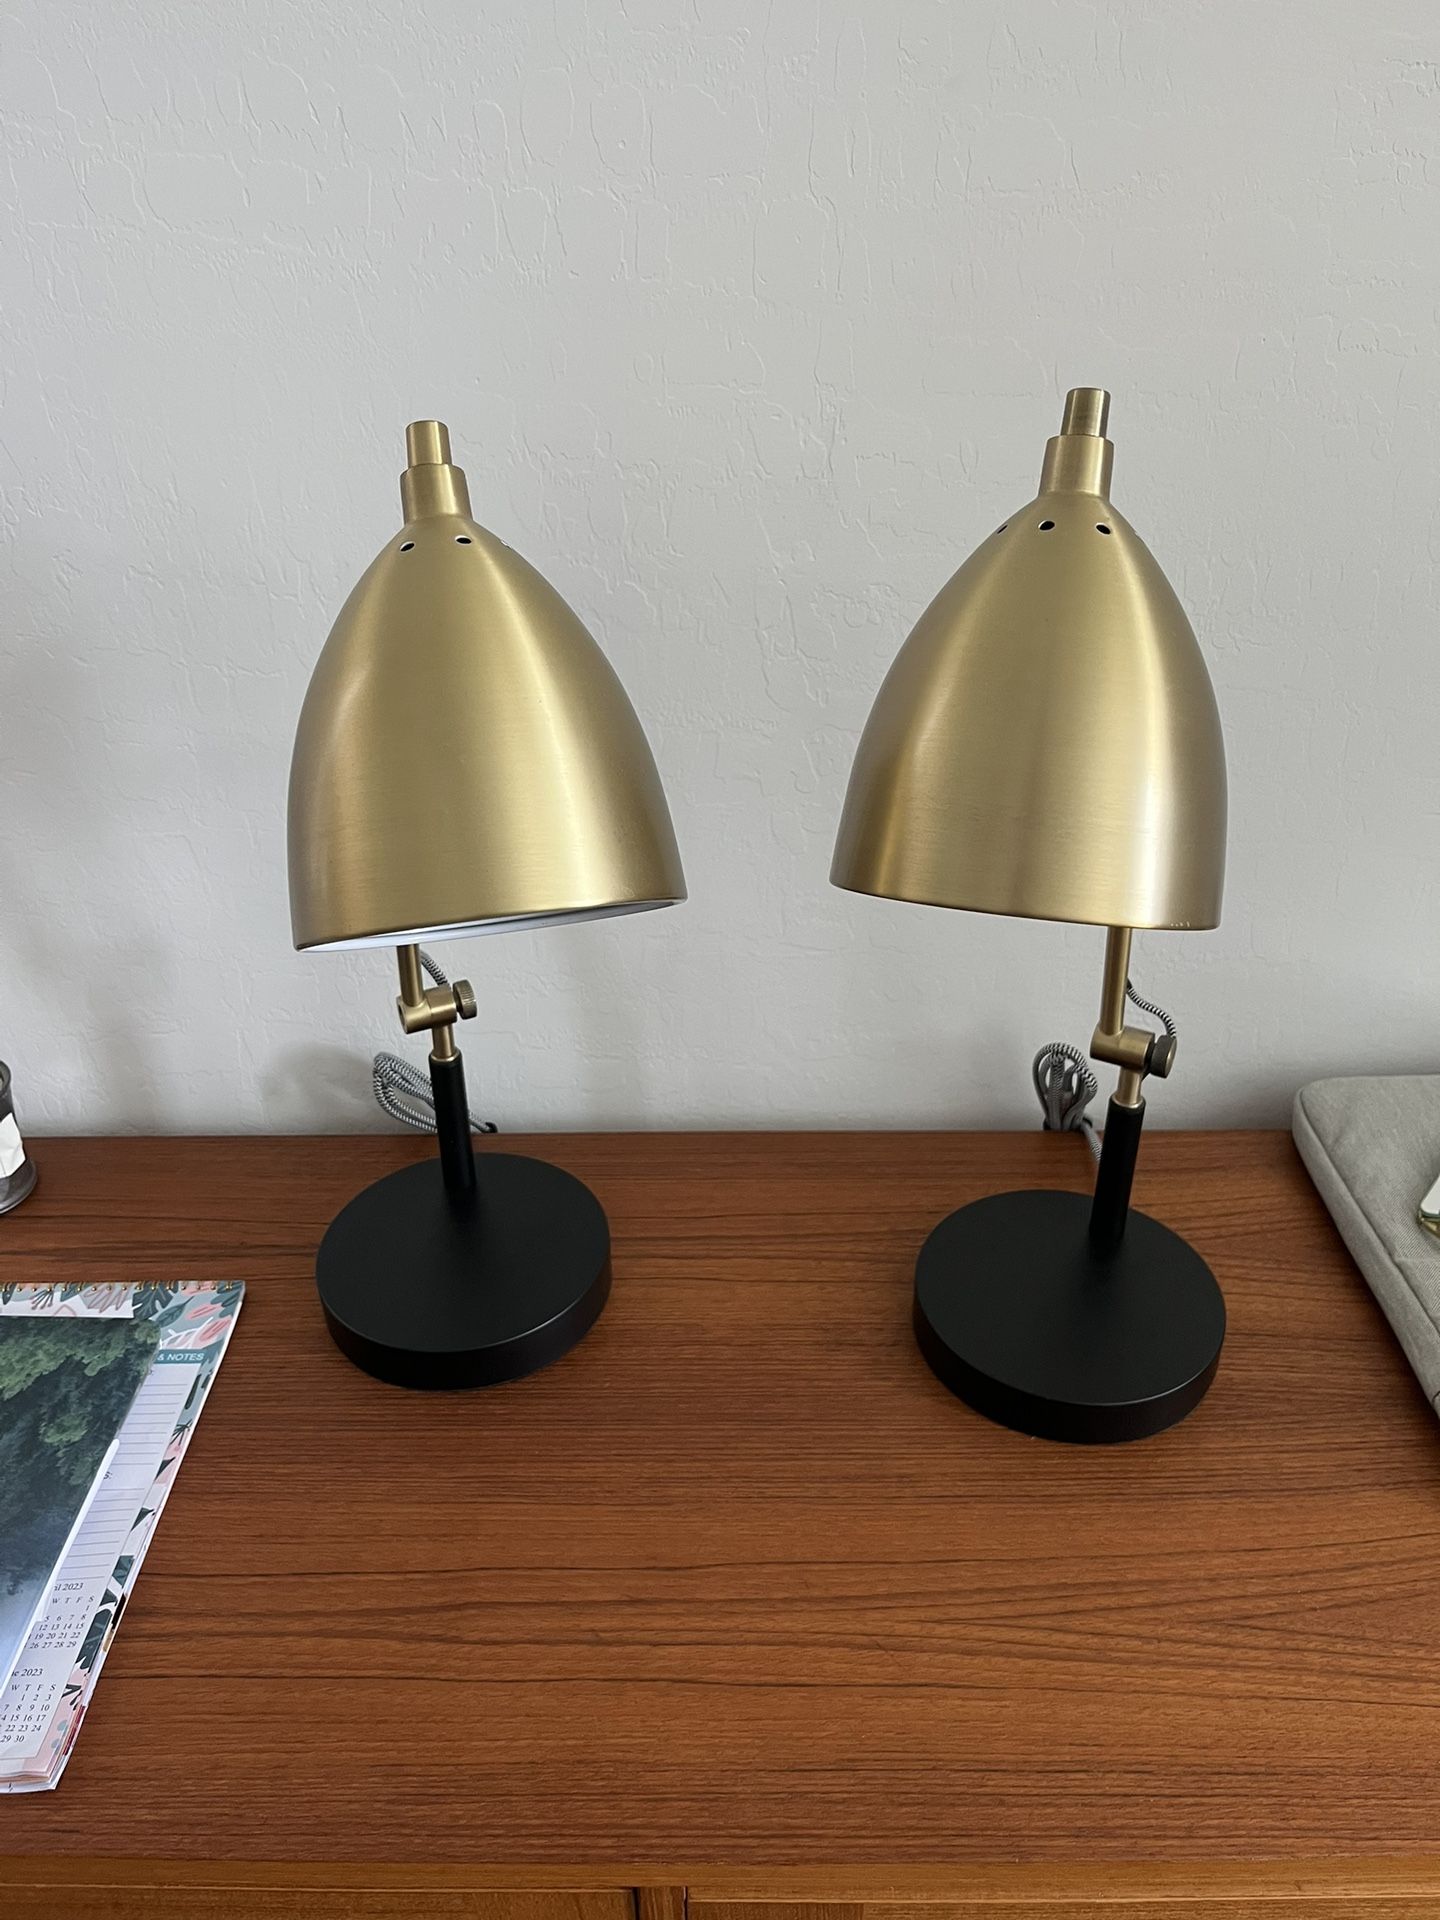 Lamp (Beside Or Desk)